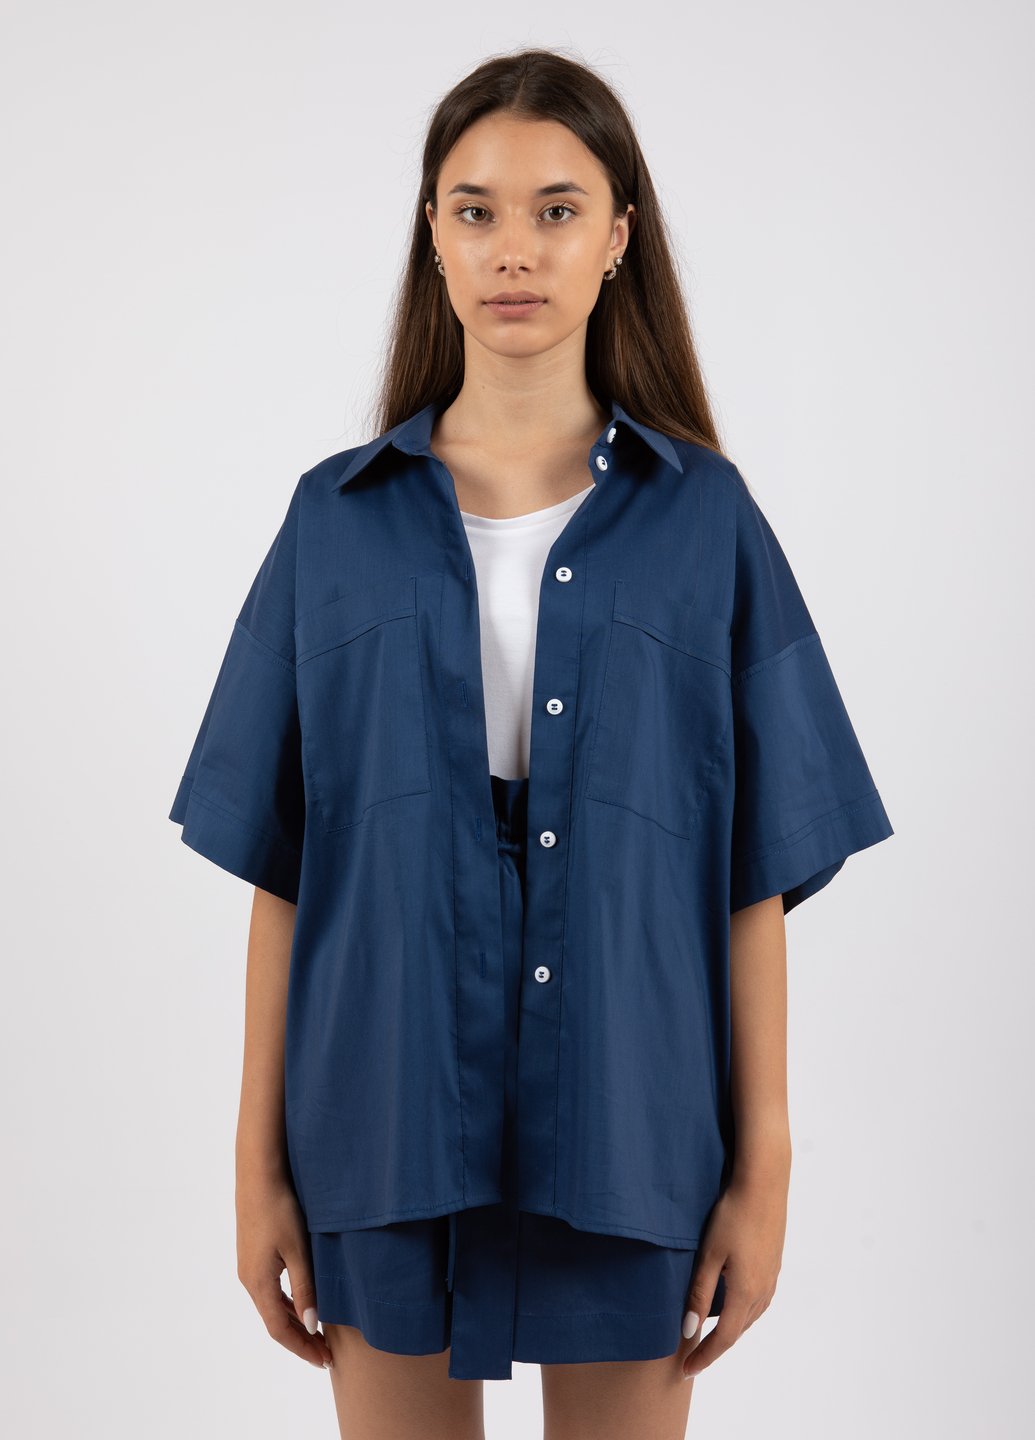 Купить Хлопковая оверсайз рубашка женская Merlini Борнео 200000020 - Синий, 42-44 в интернет-магазине